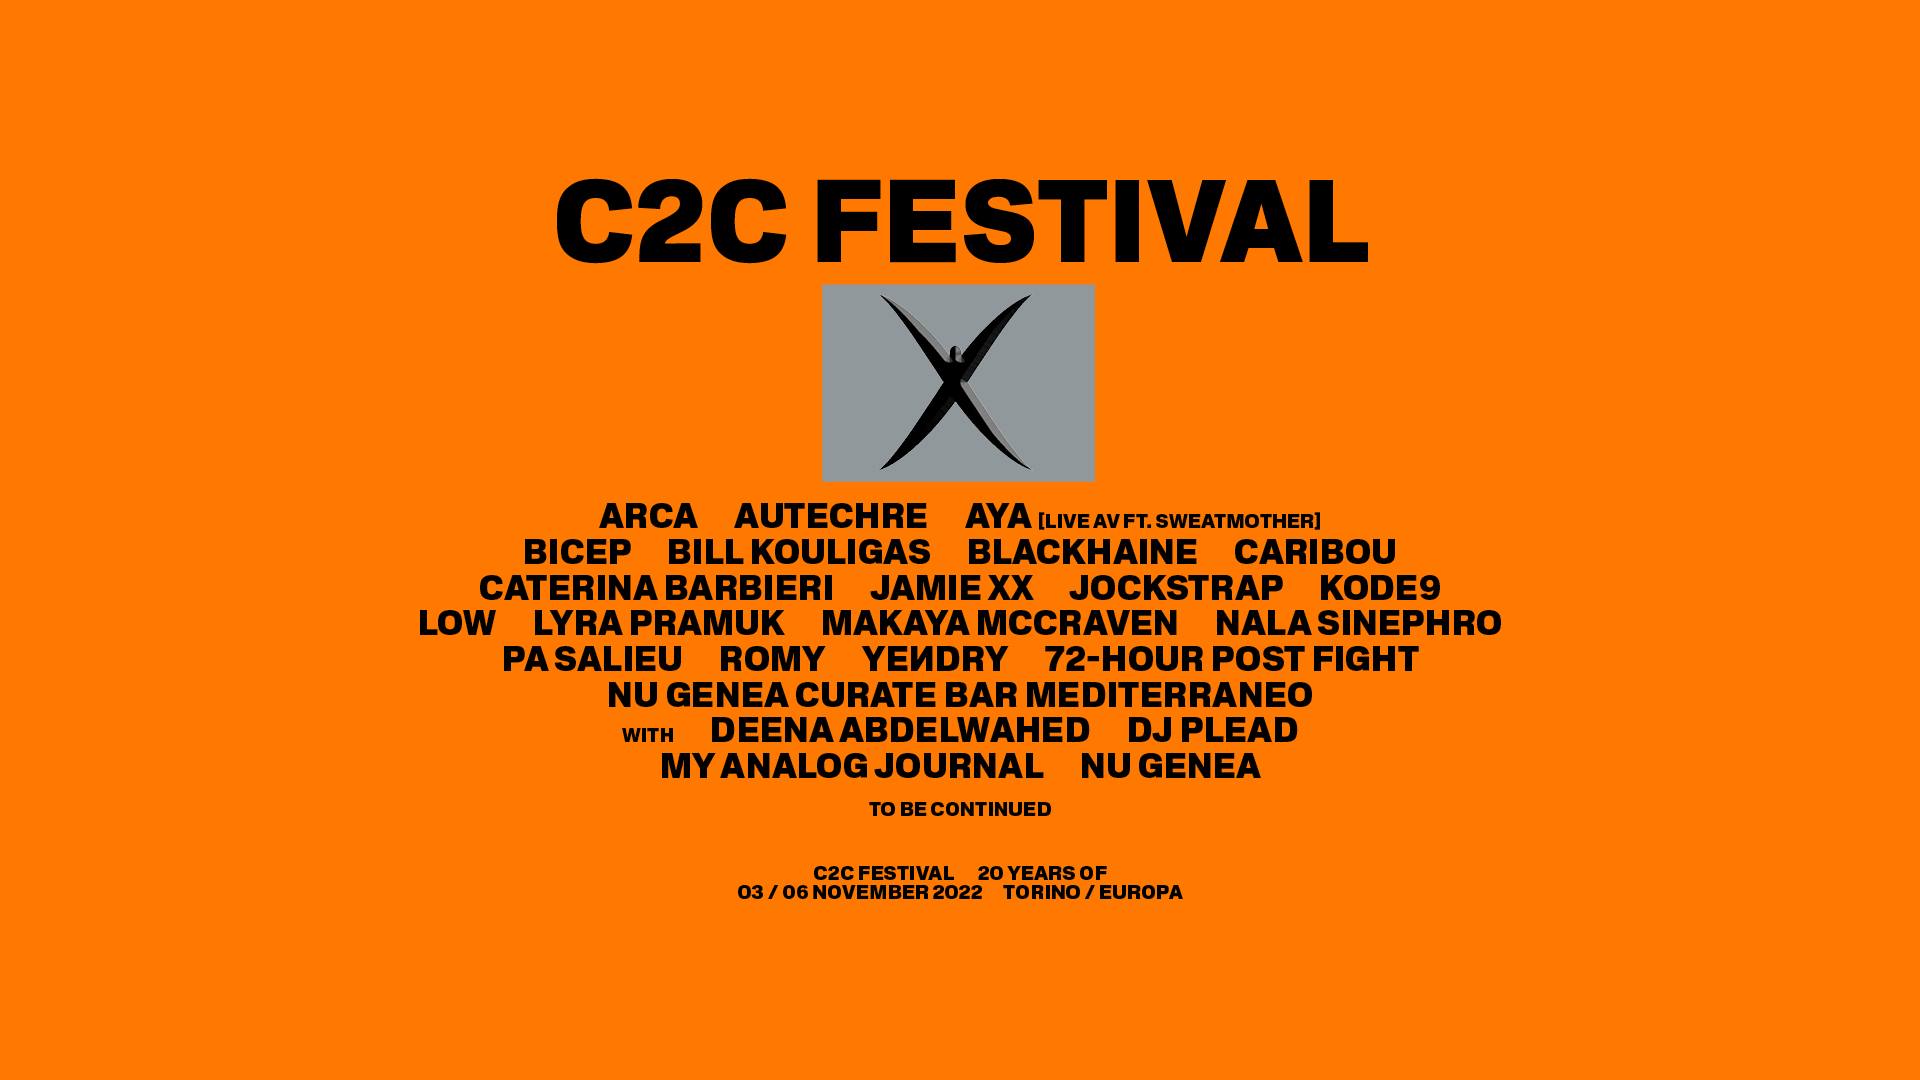 C2C Festival 2022 - Caterina Barbieri & others